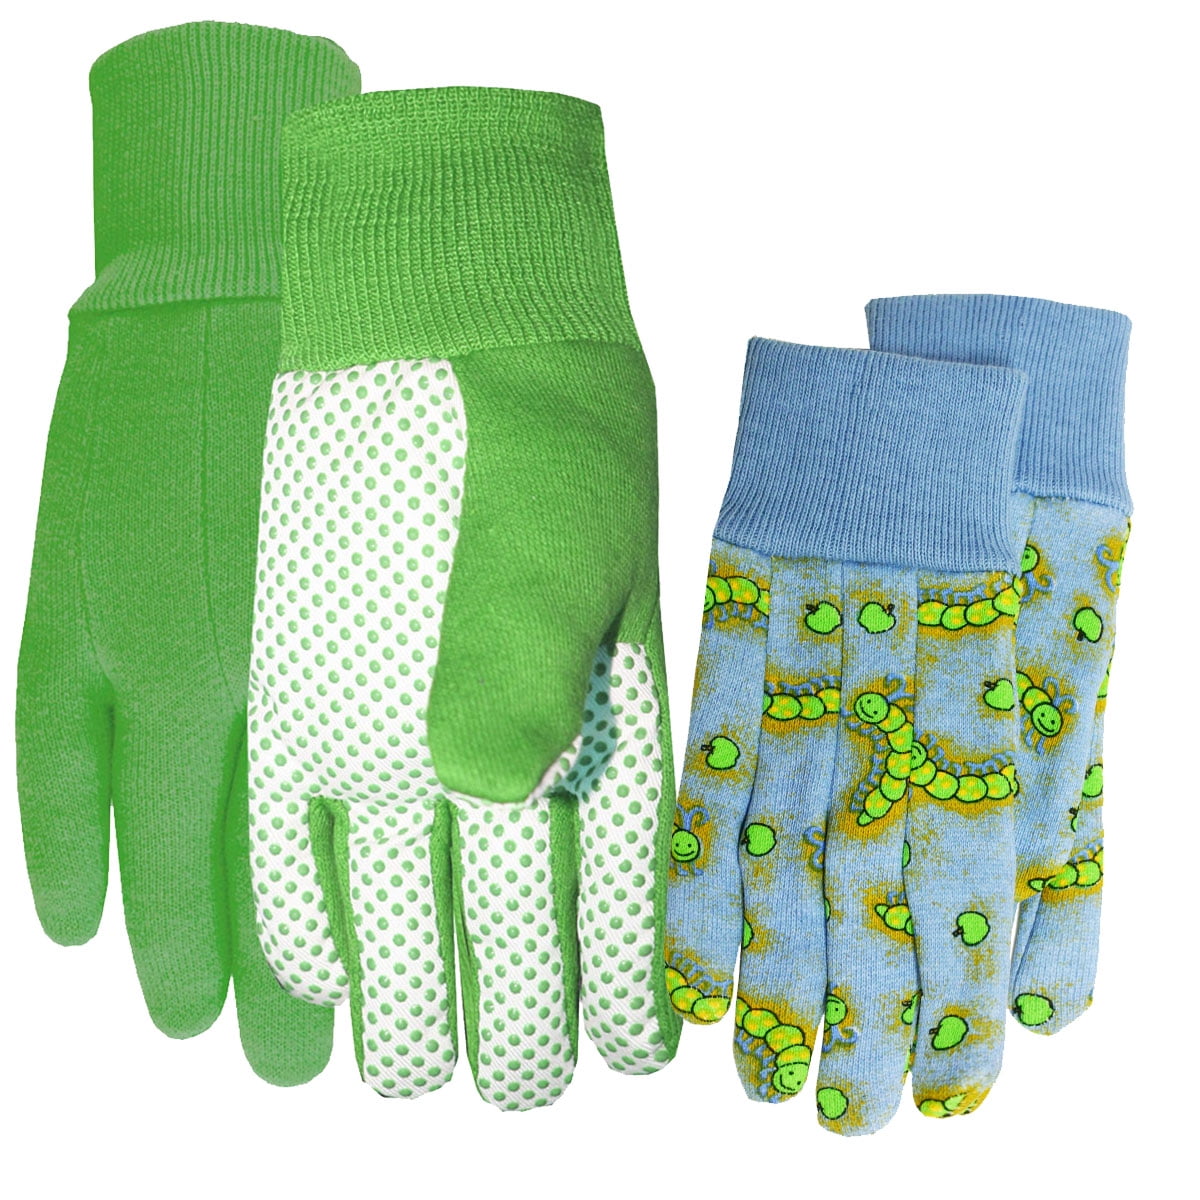 2 Pairs Super Comfort Stretch Garden Gardener Pink Green Gloves With Dot Grip 